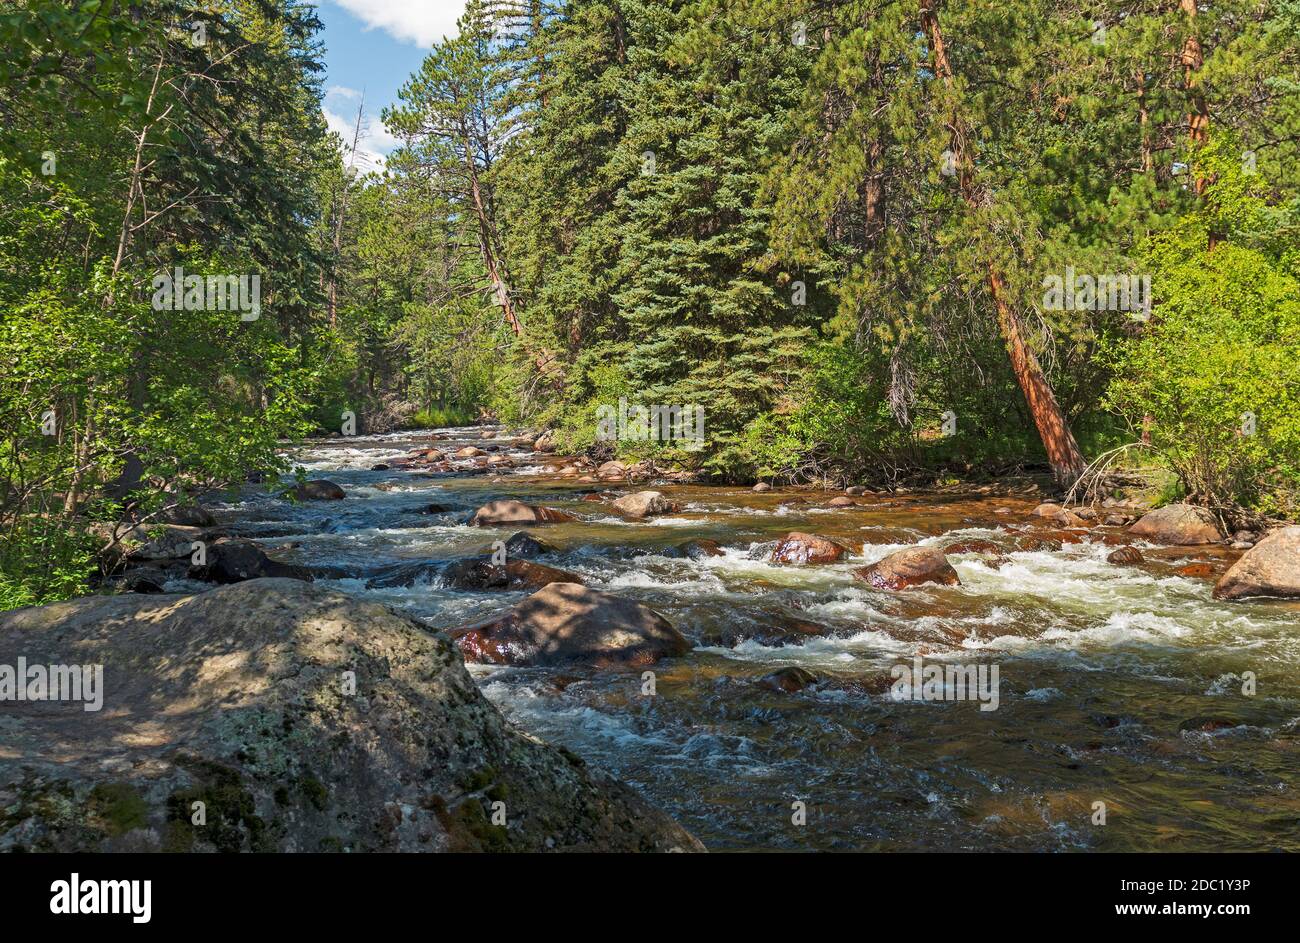 Ruisseau de montagne traversant la forêt de pins dans les montagnes Rocheuses Parc national du Colorado Banque D'Images